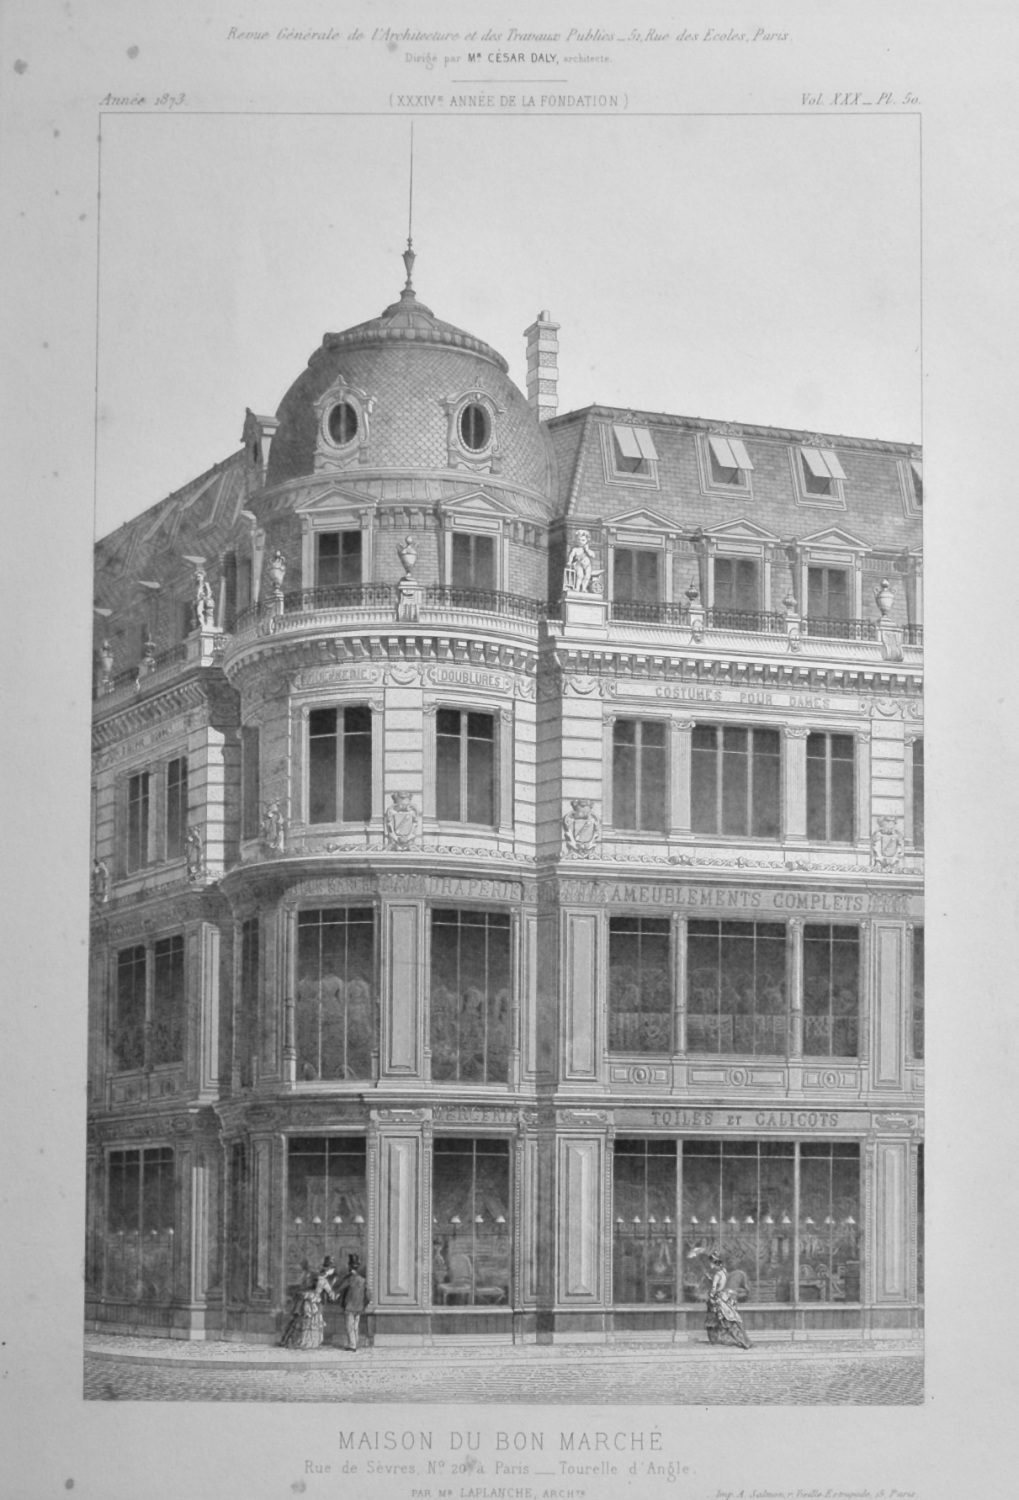 Maison Du Bon Marche, Rue de Sèvres, No. 20, a Paris__Tourelle d'Angle.  18